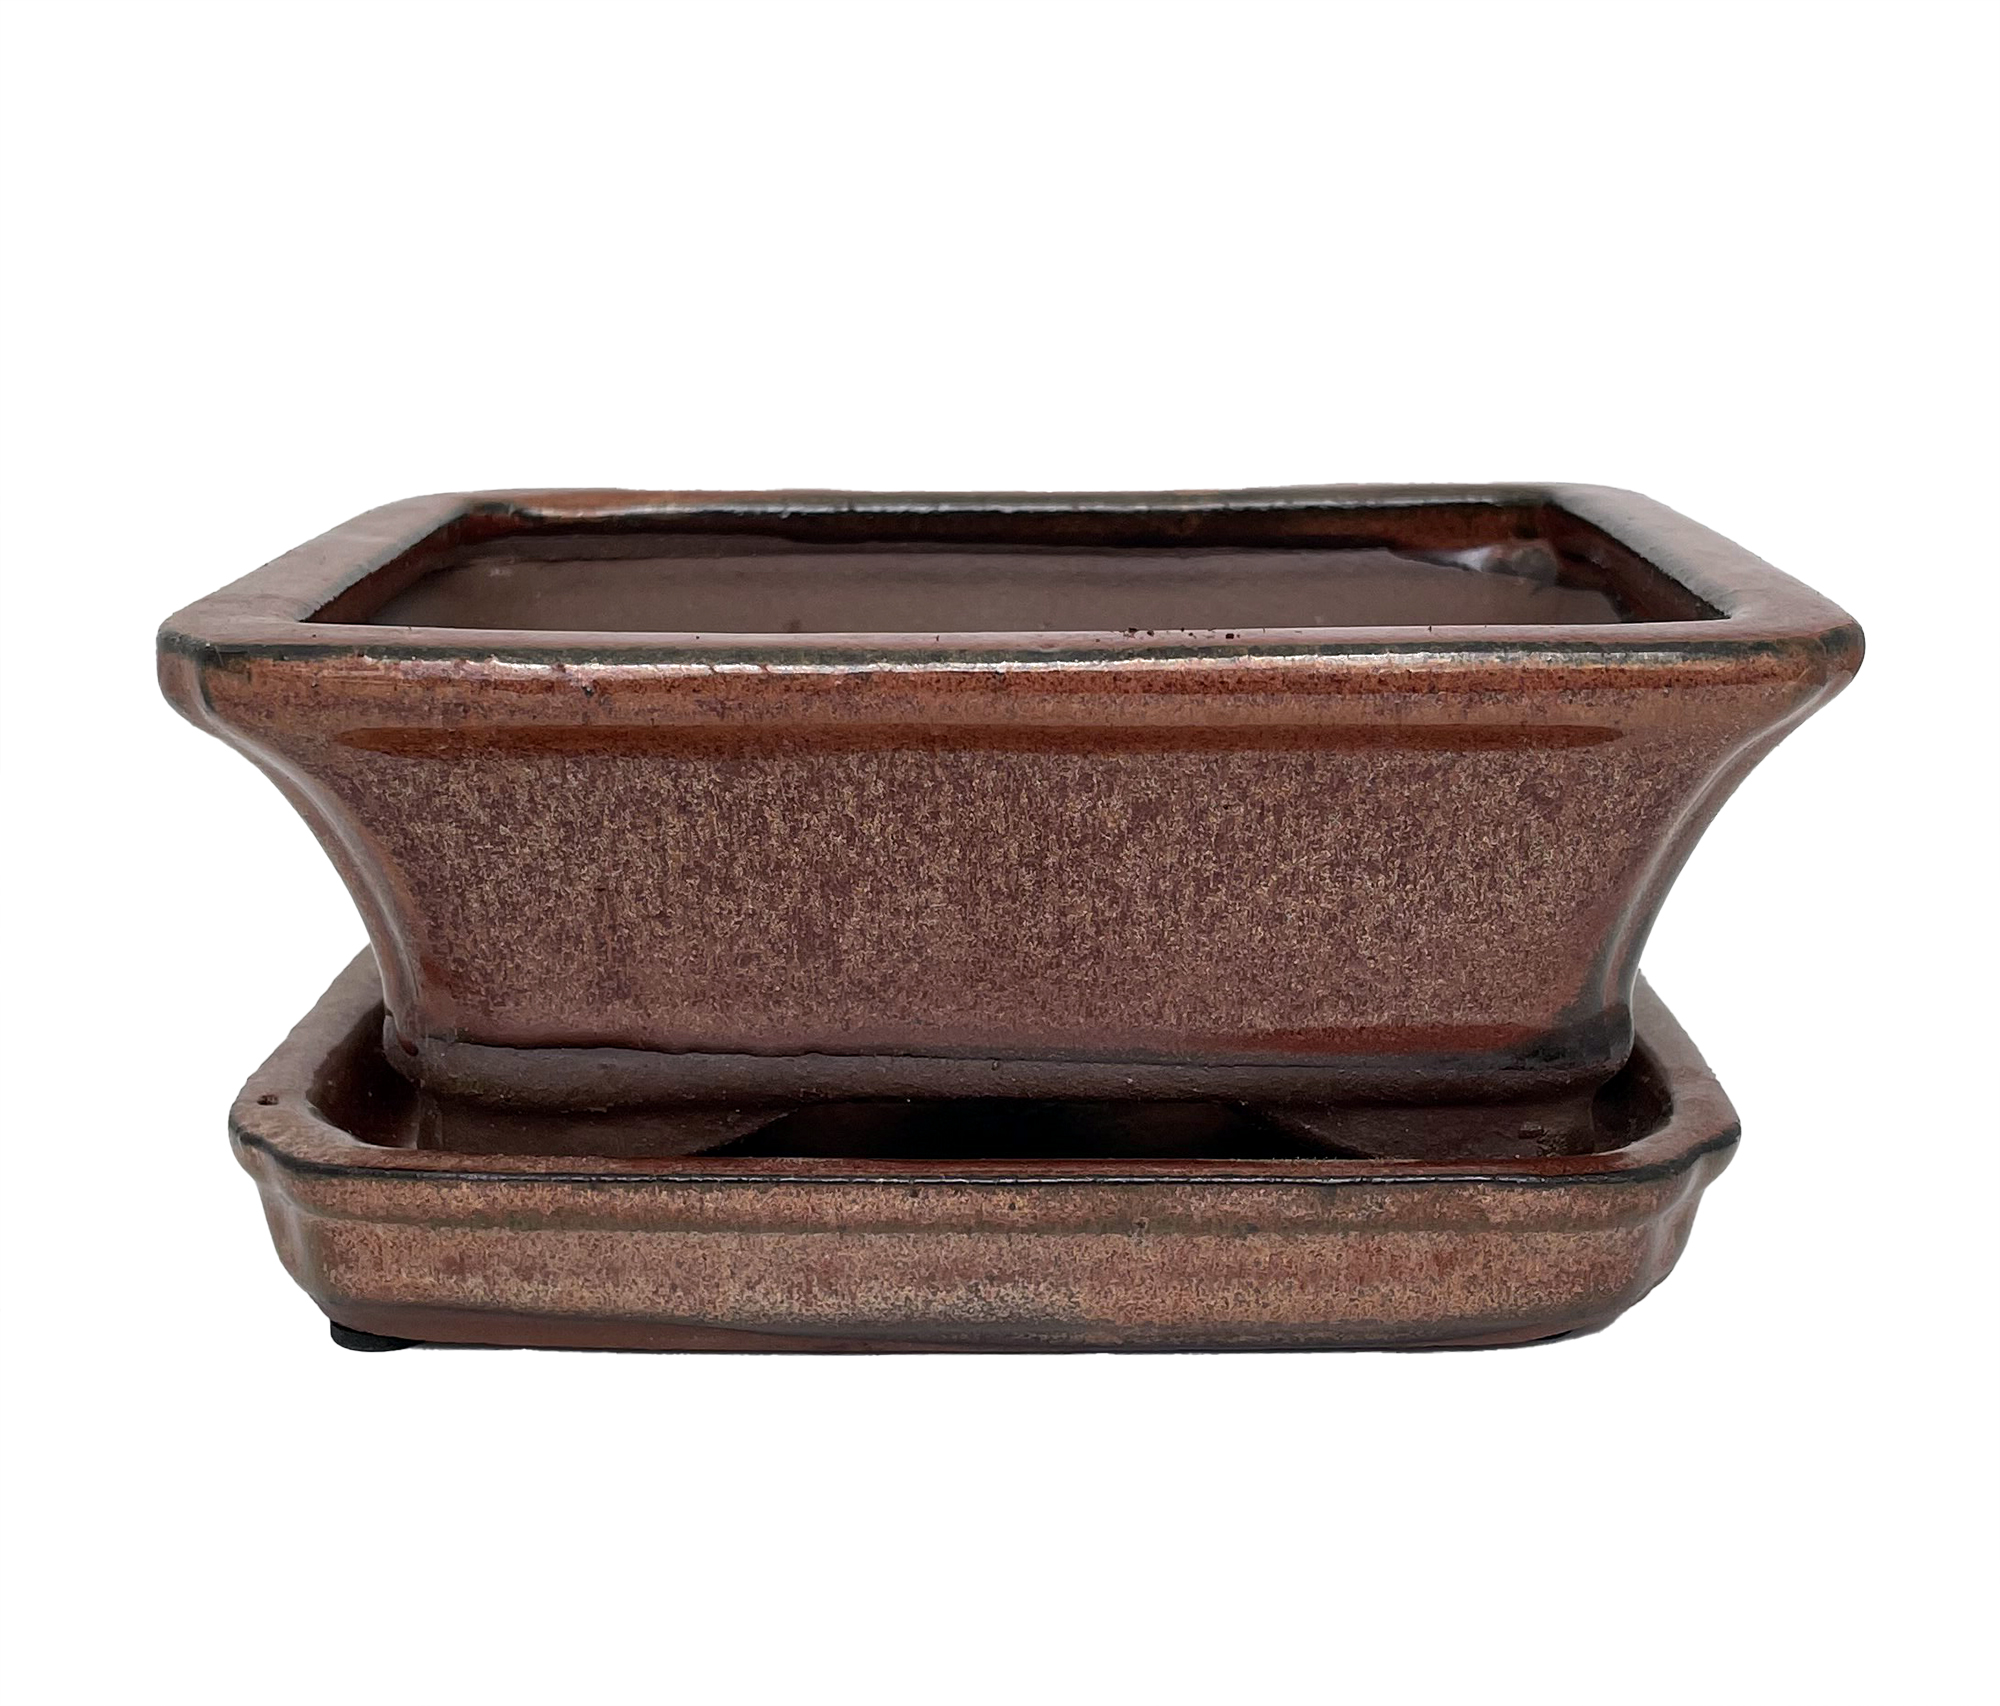 Ceramic Bonsai Pot/Saucer - Copper Flared - 6 1/8 x 4 1/2 x 2